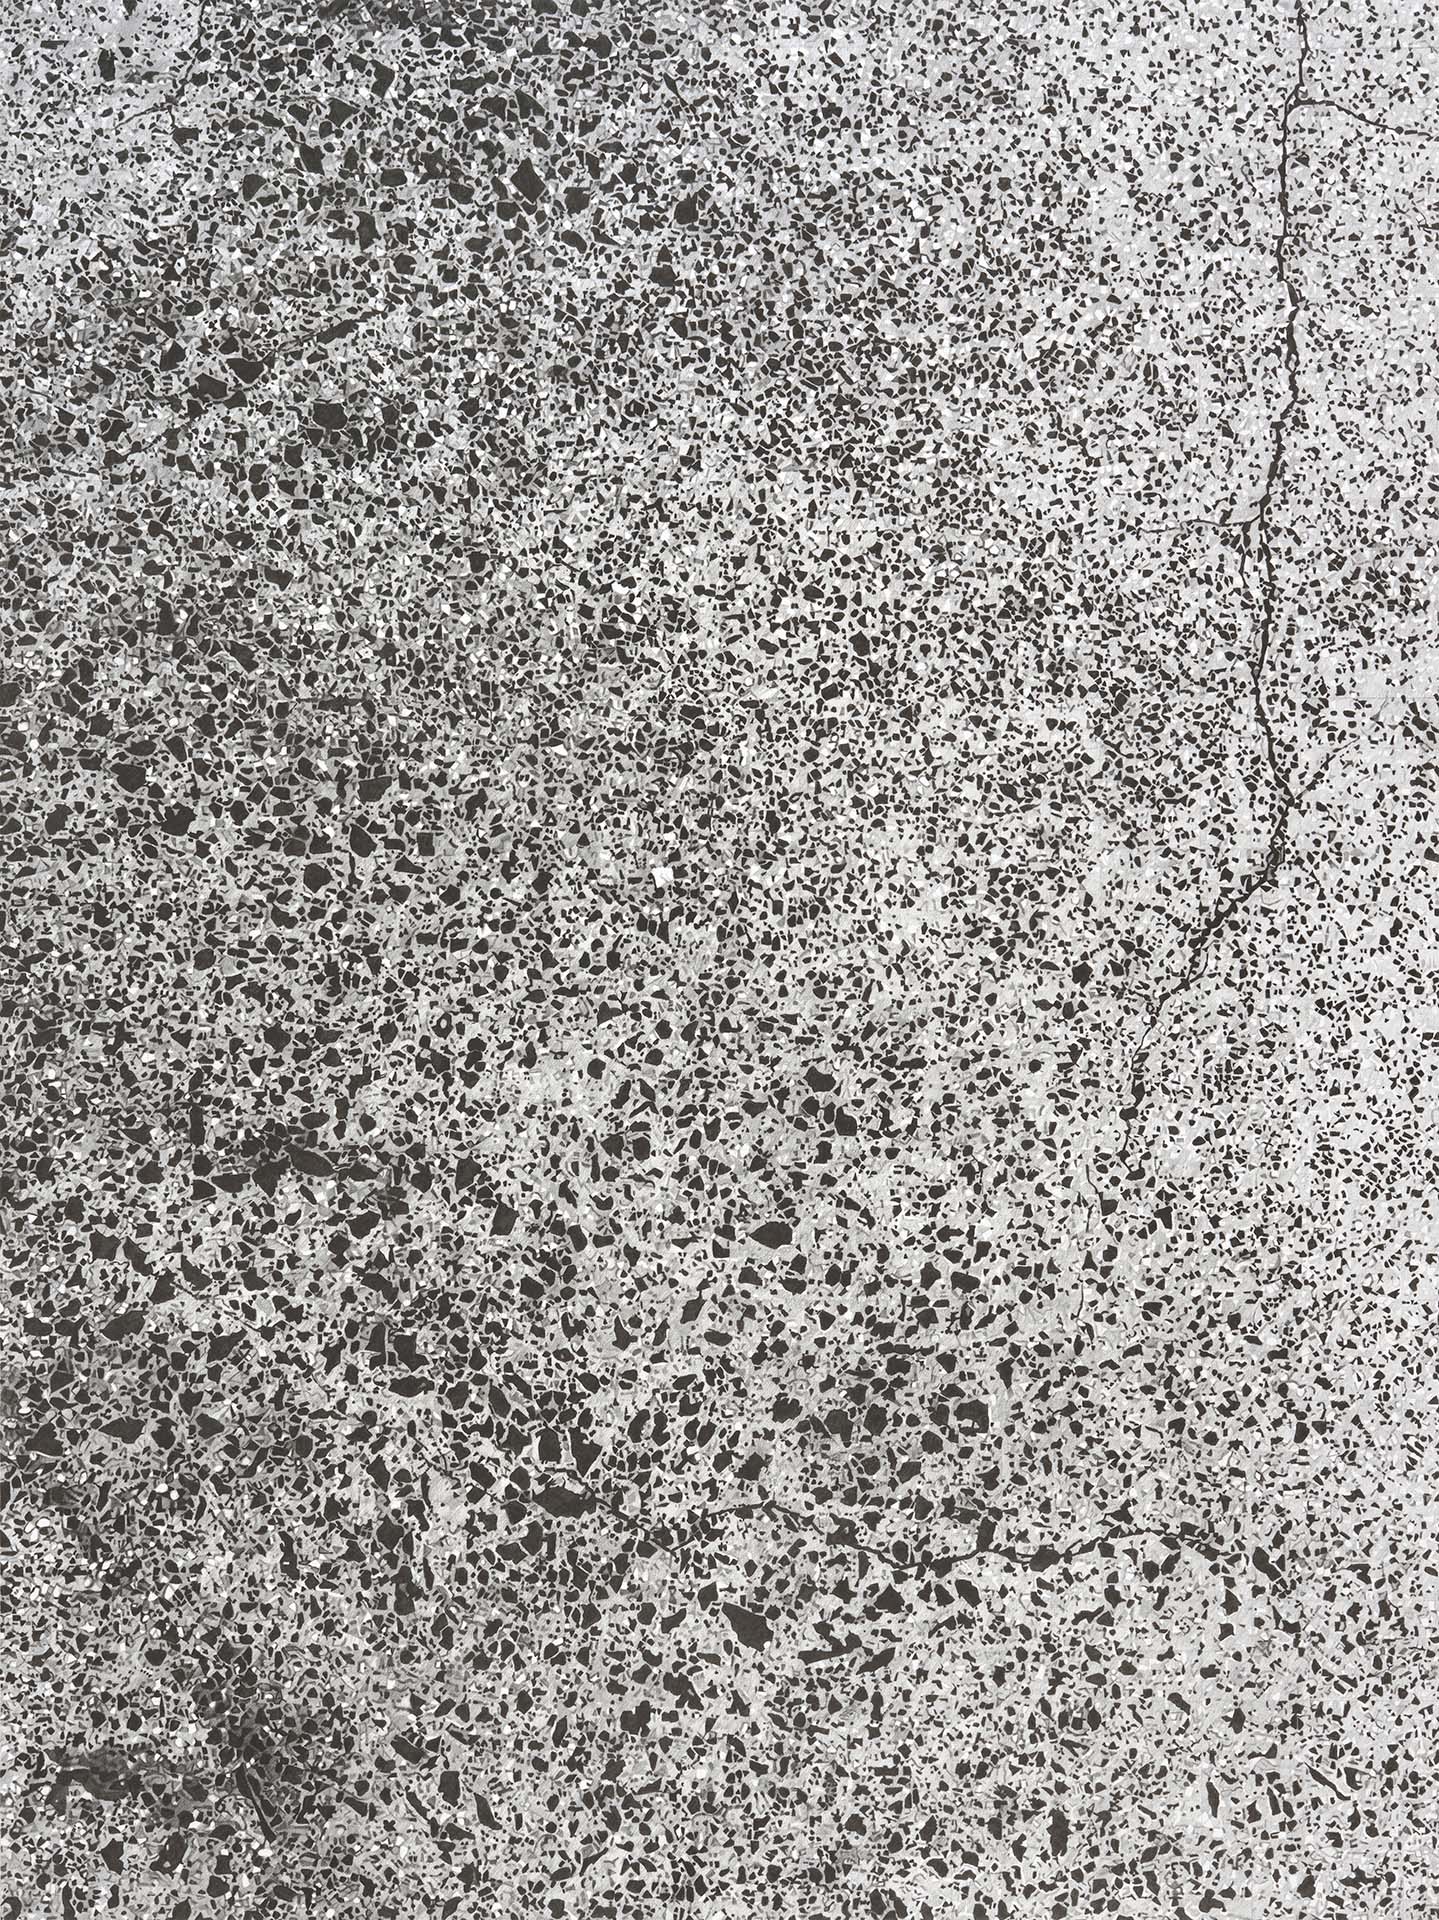 Concrete 2, 2021, graphite on bristol board, 575 x 430mm. Photo: Sam Hartnett